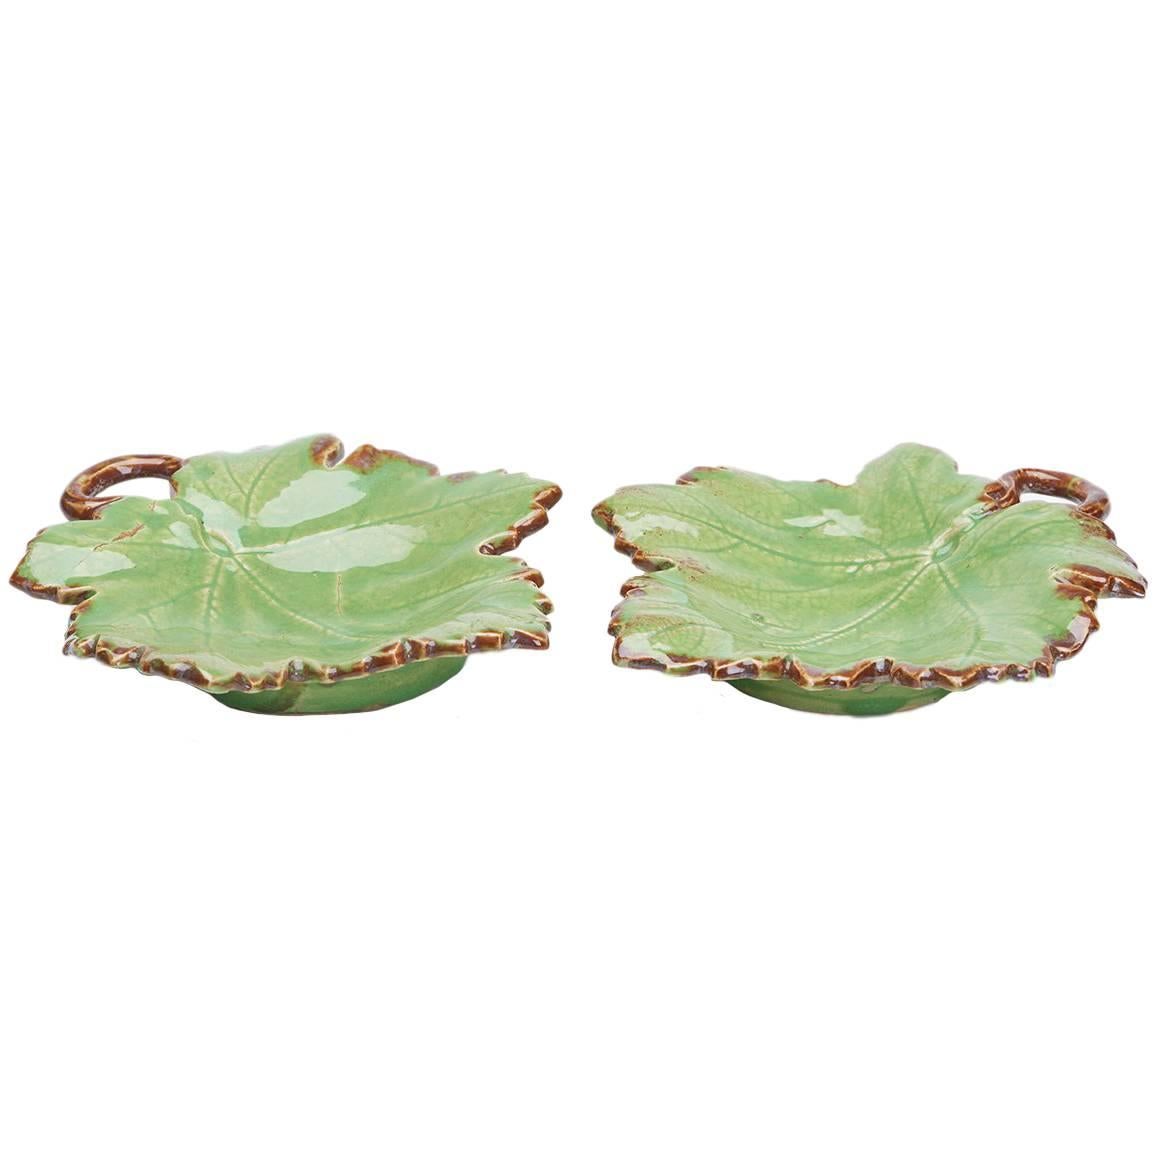 Greber Pareja de platos de cerámica artística francesa con hojas verdes, hacia 1899-1933